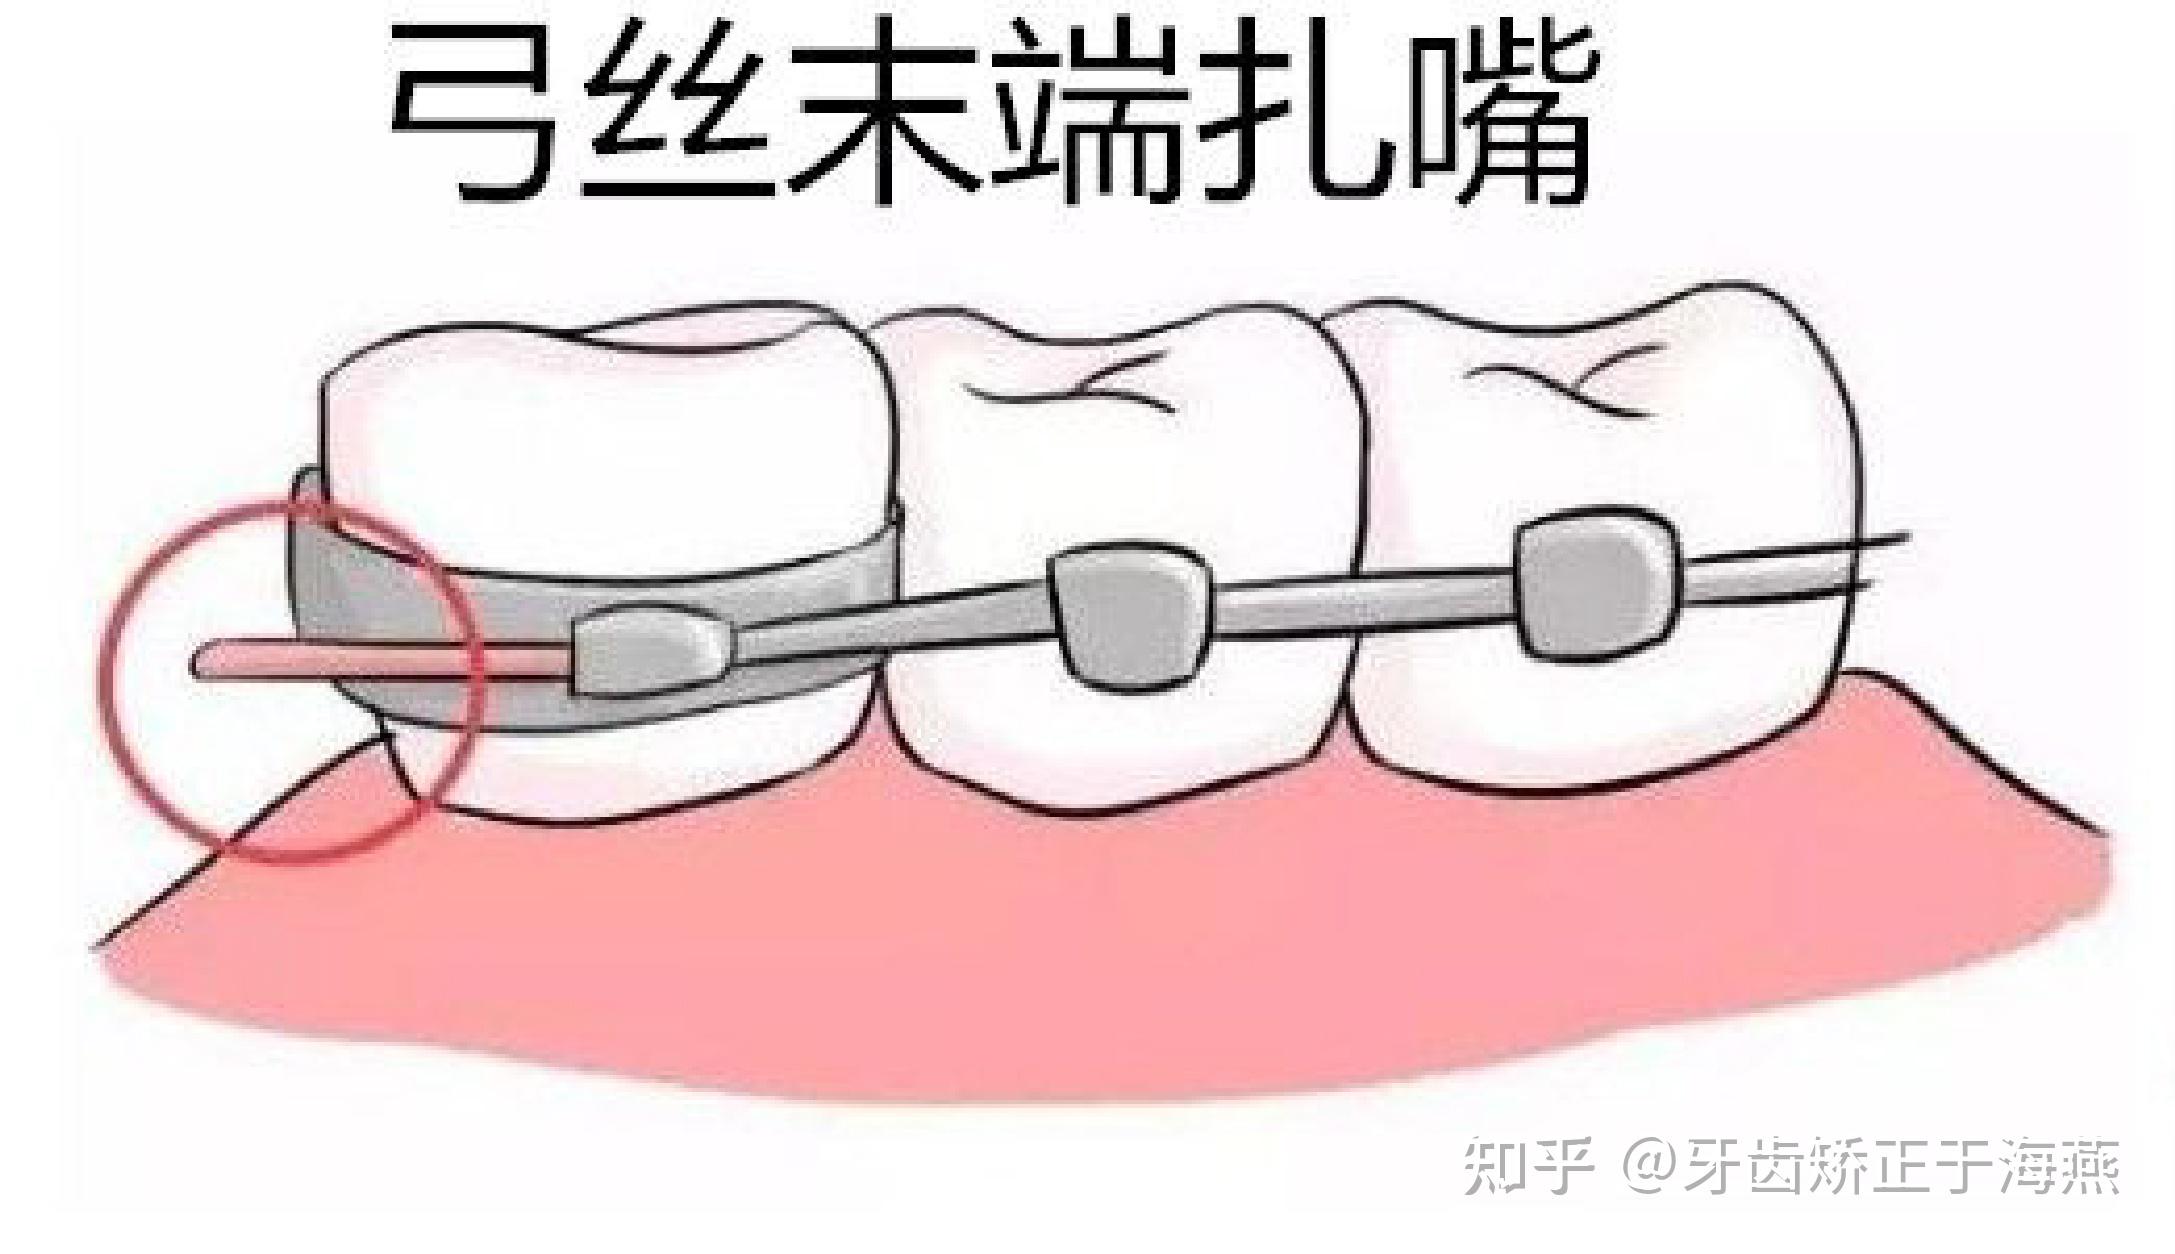 牙槽嵴顶的位置示意图-图库-五毛网